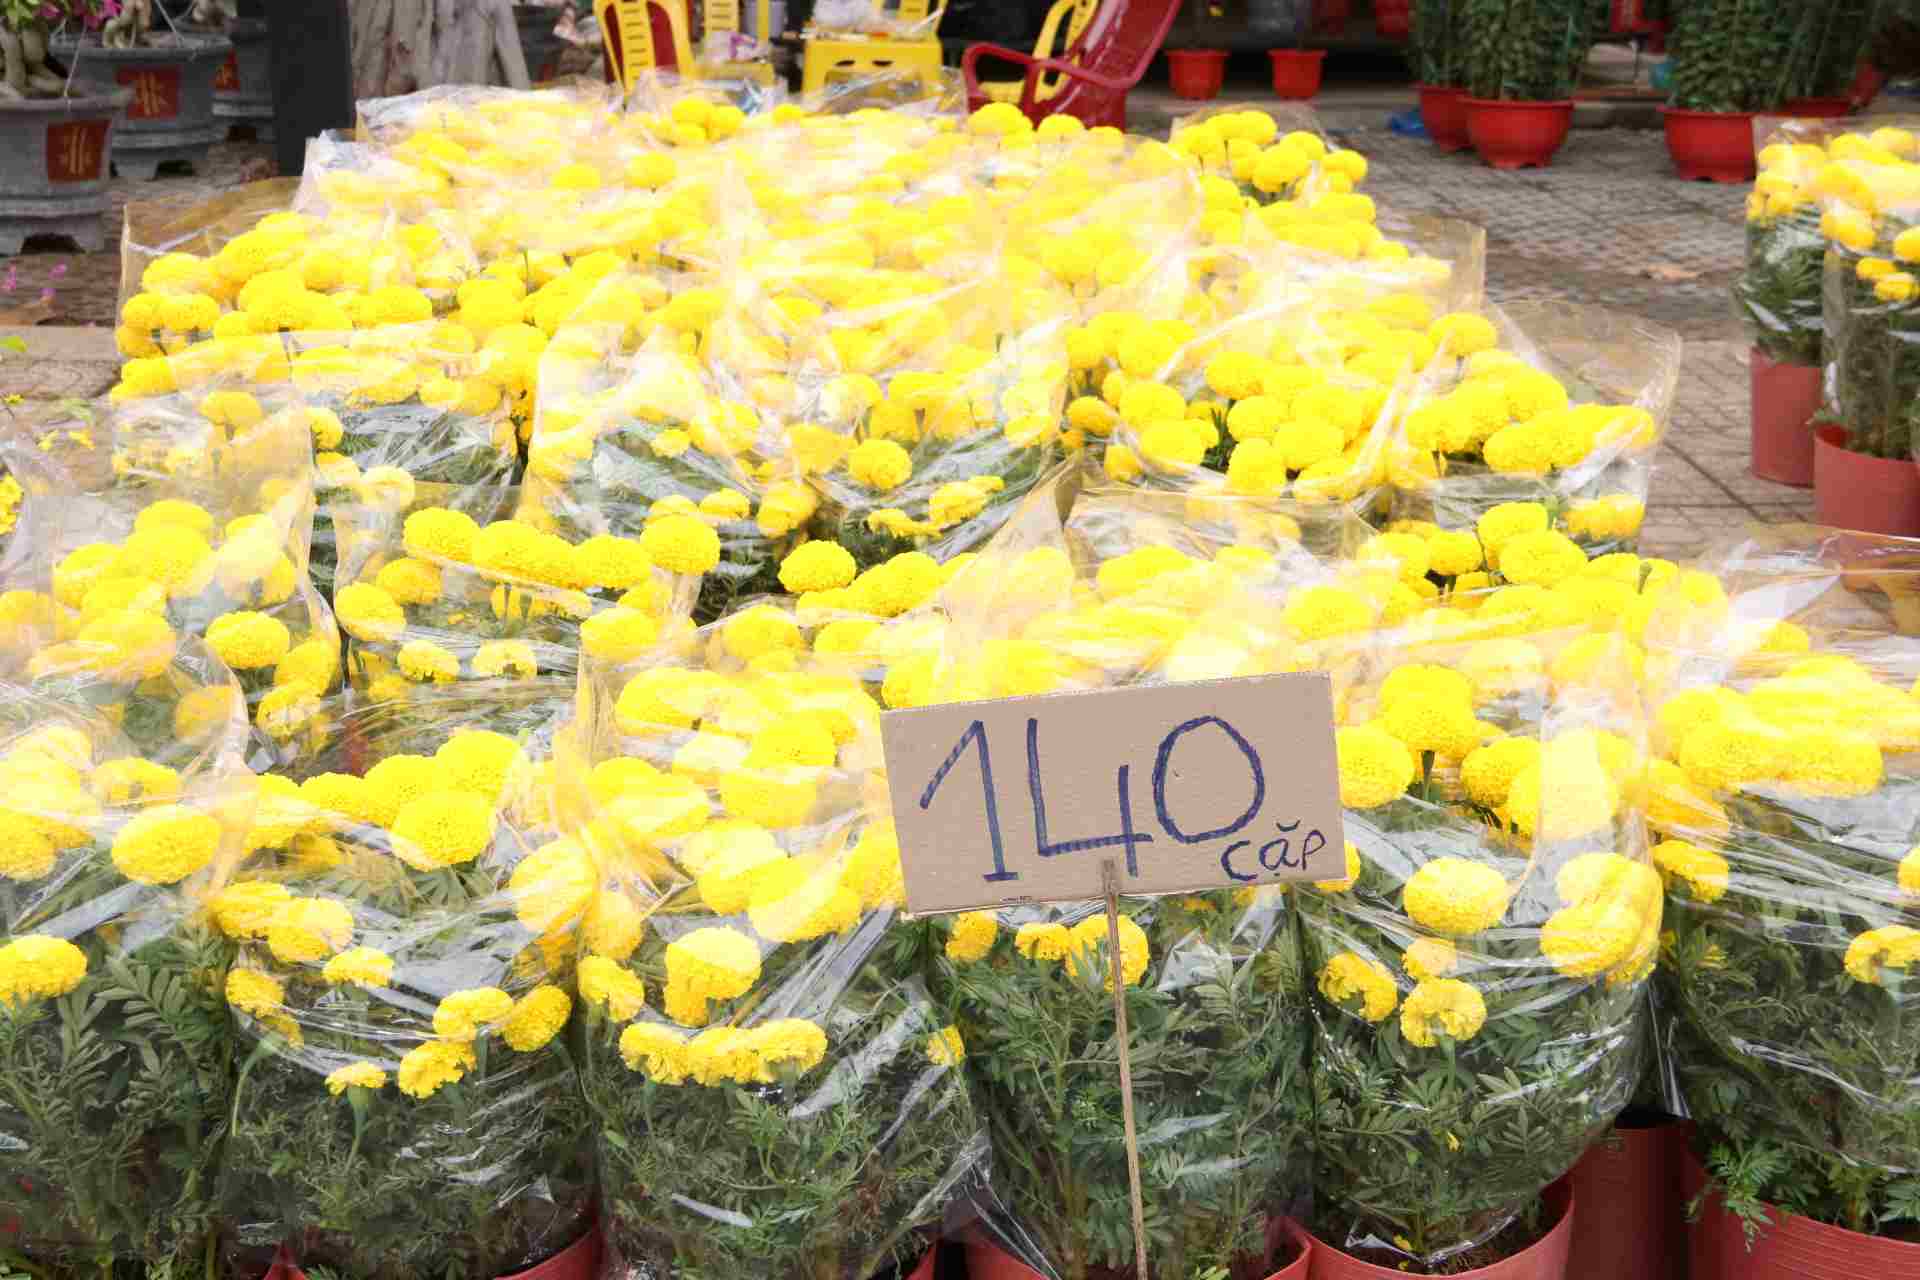 Hoa vạn thọ trước bán từ 160-200.000 đồng, nay giảm giá xuống 1400.000 đồng/ cặp.